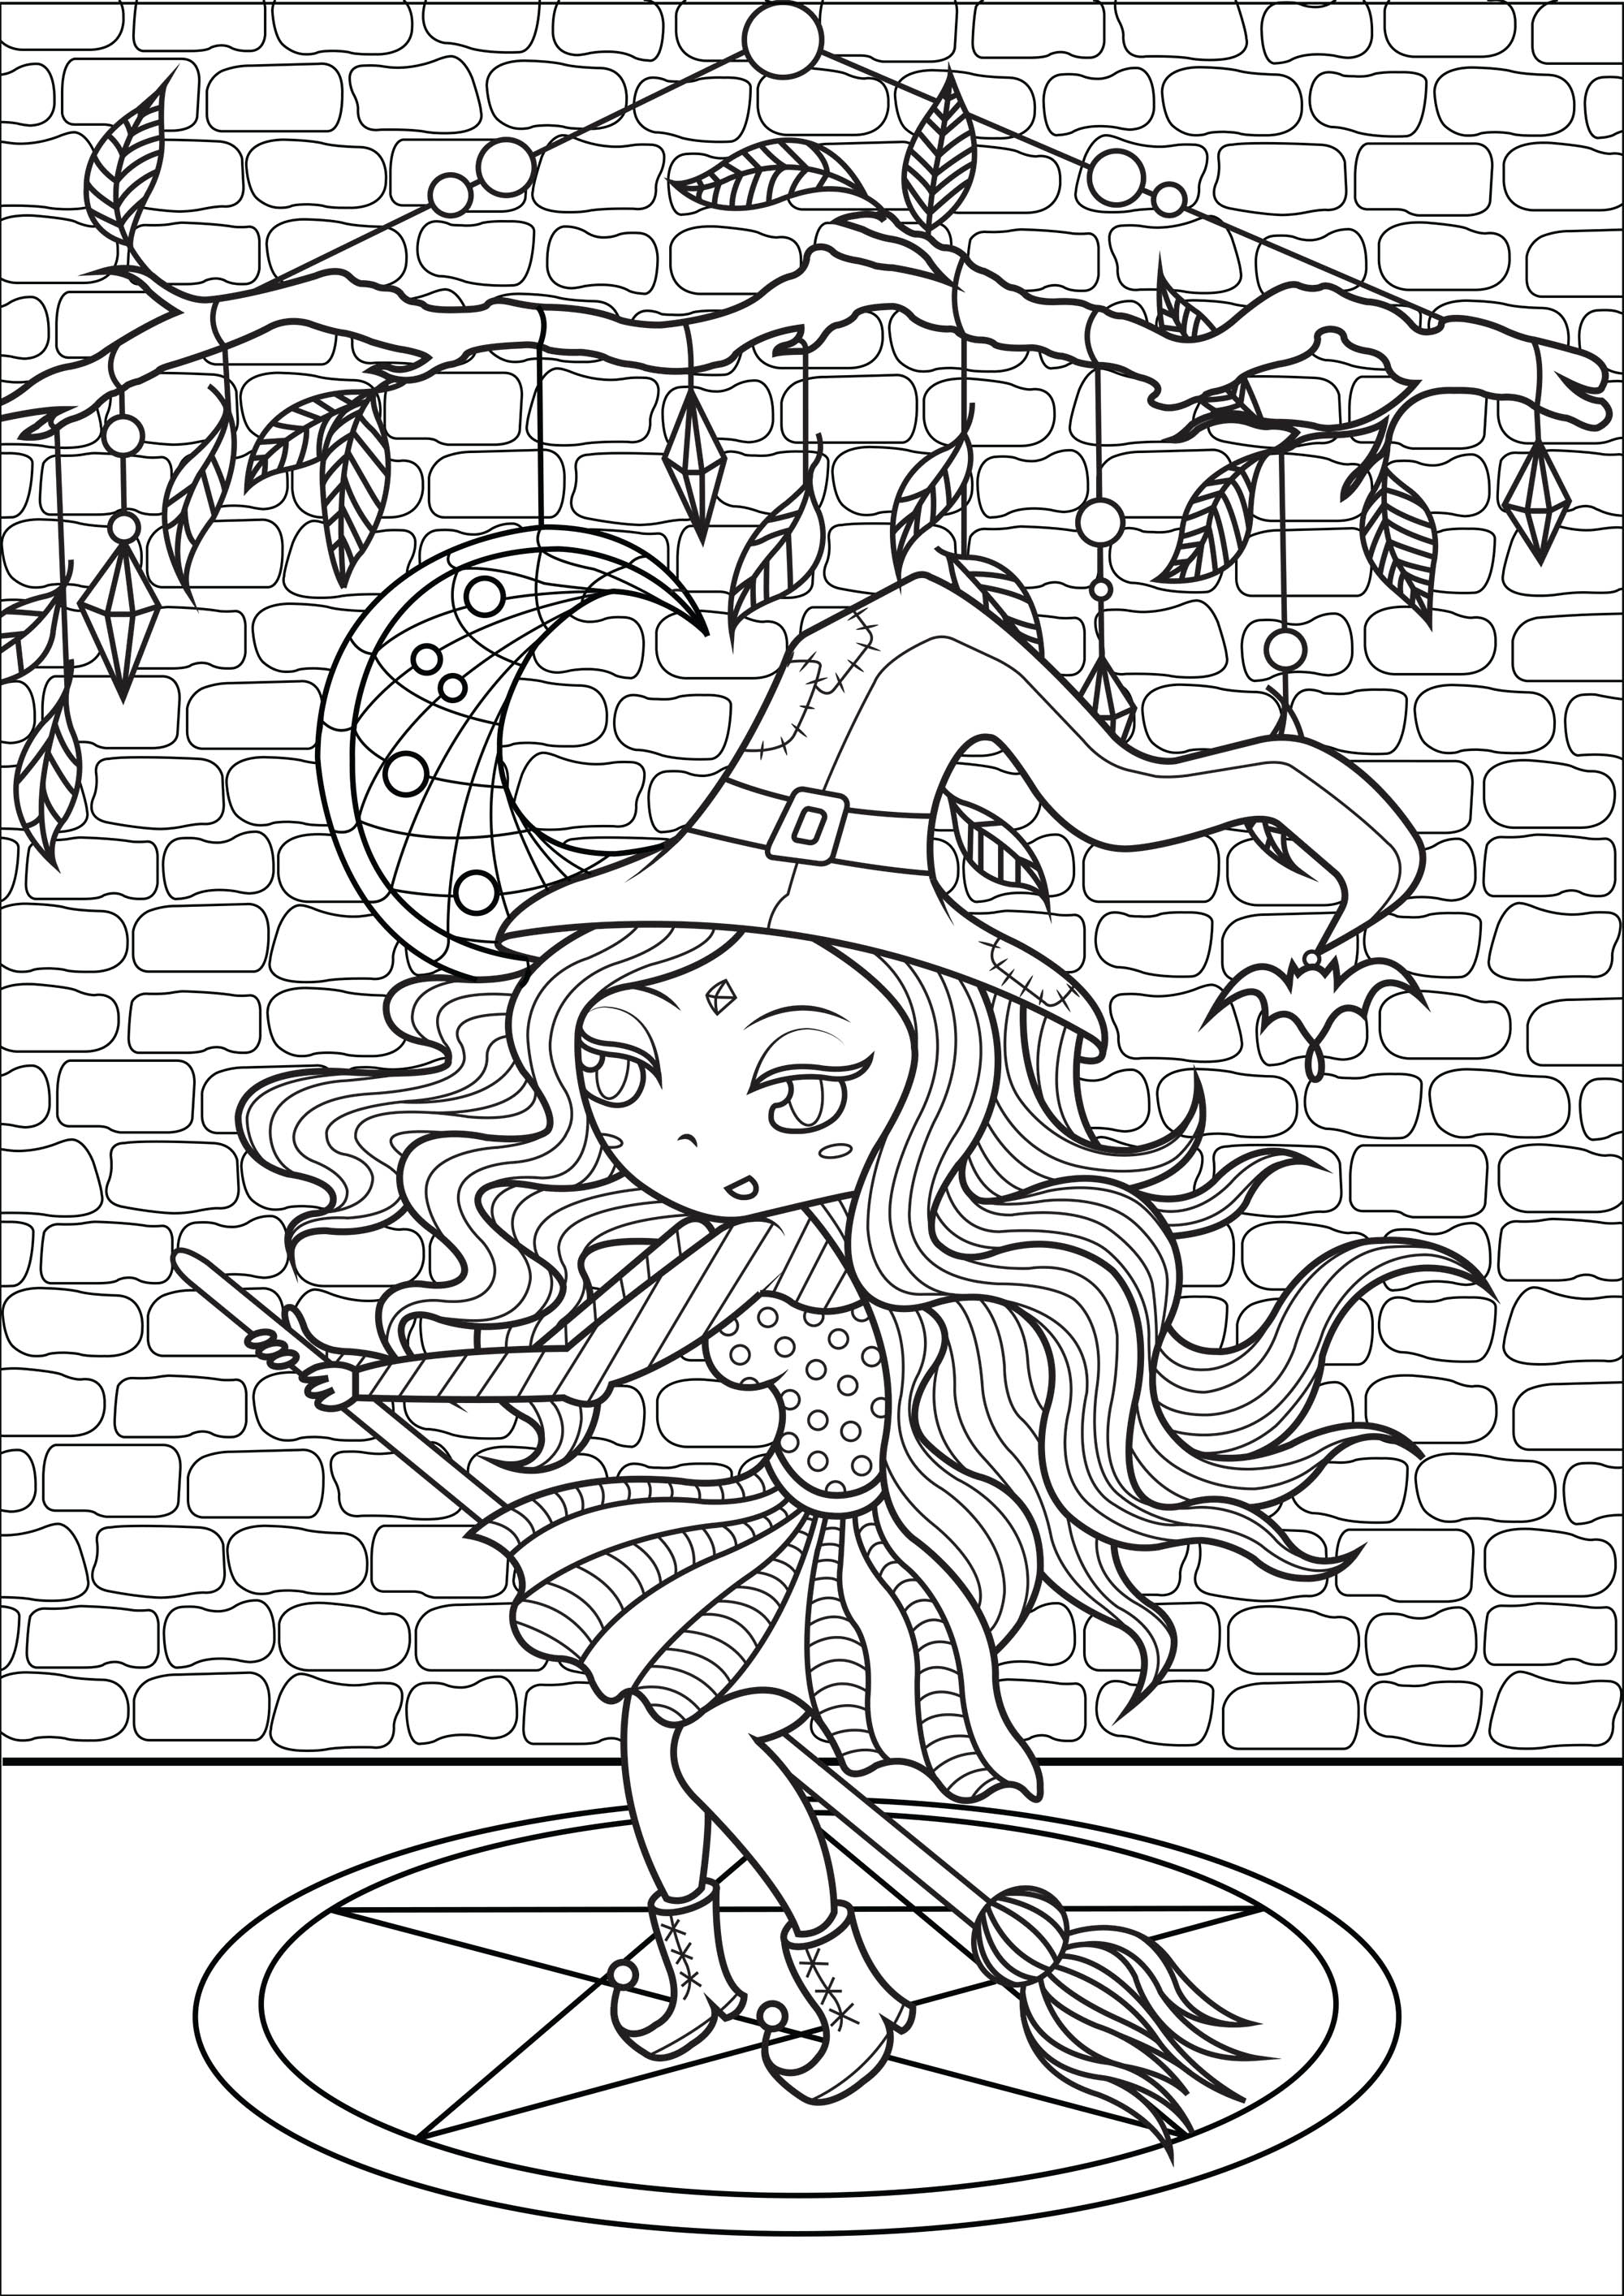 Bruxa pronta para descolarEsta página para colorir original representa uma bruxa com a sua roupa colorida e o seu chapéu pontiagudo, pronta para descolar.